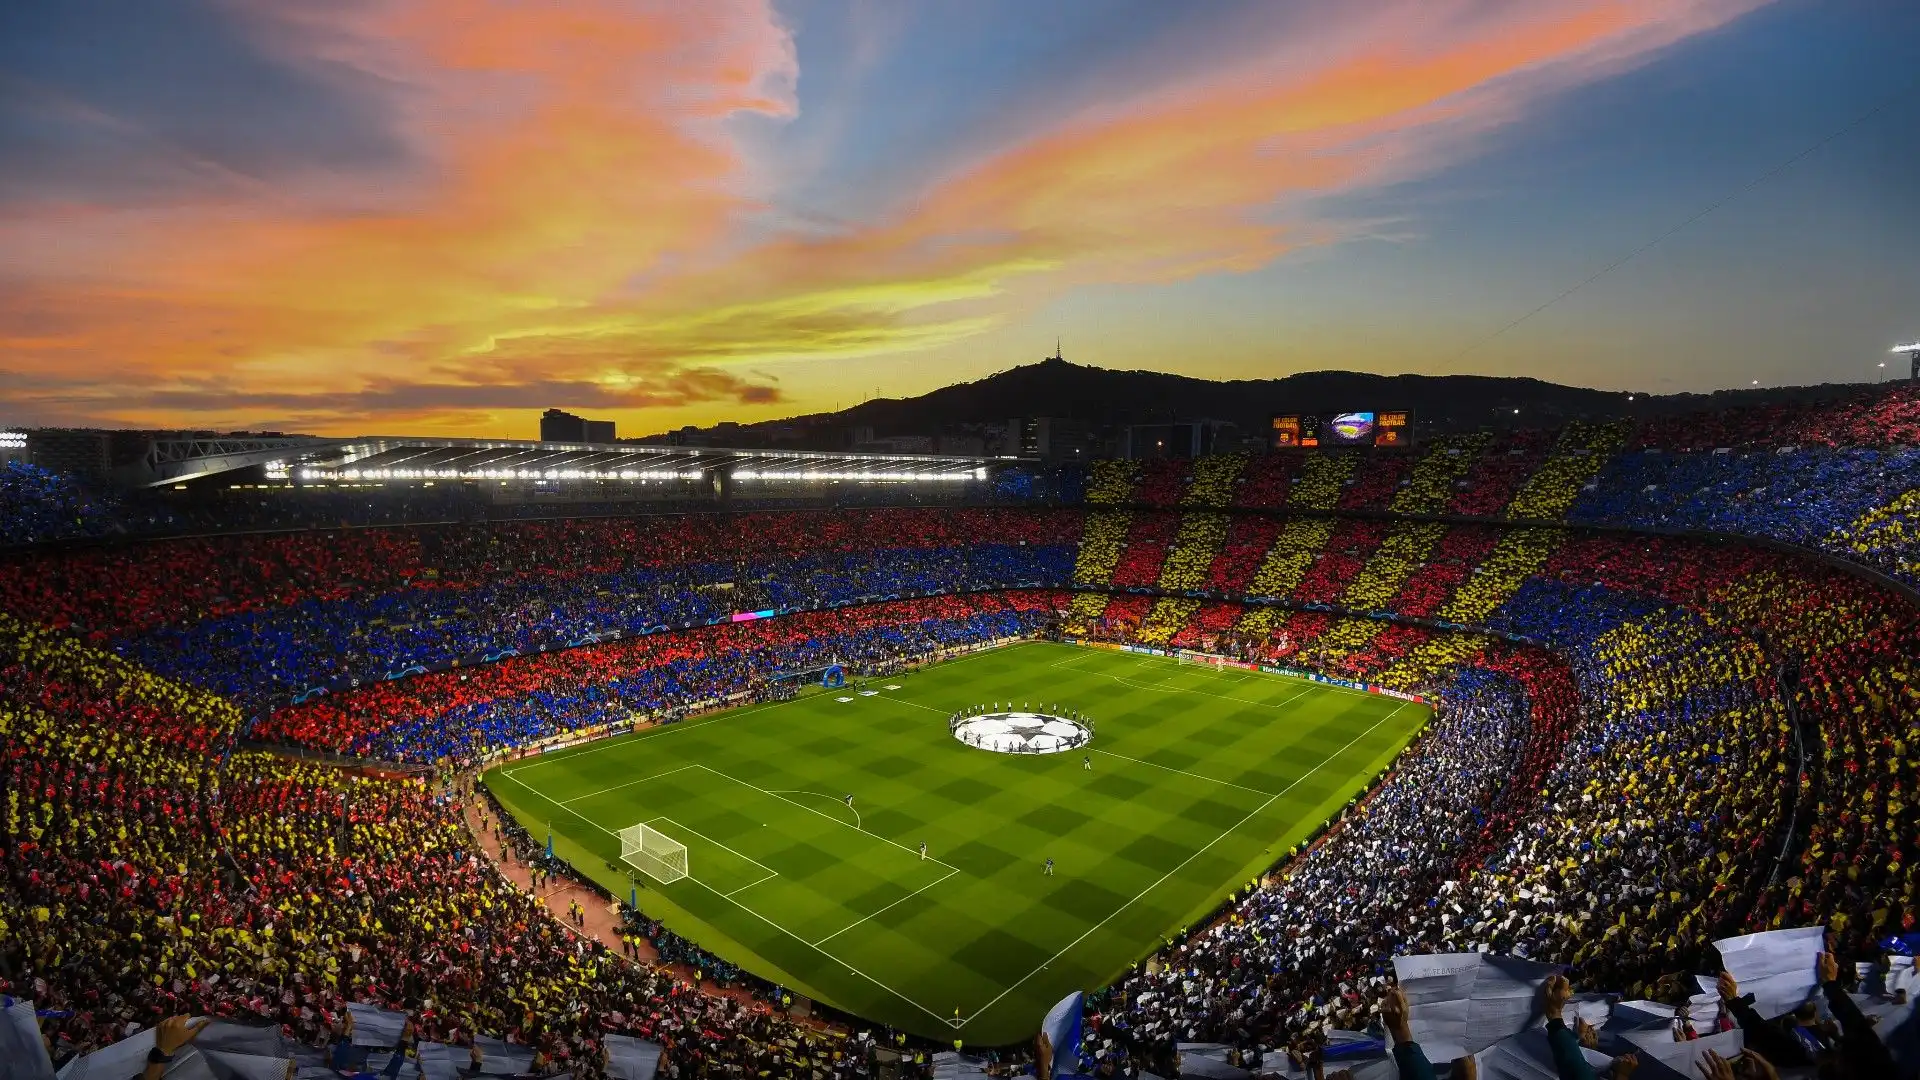 Camp Nou - Barcellona, ??Spagna: lo stadio del Barcellona, può ospitare più di 99.000 spettatori